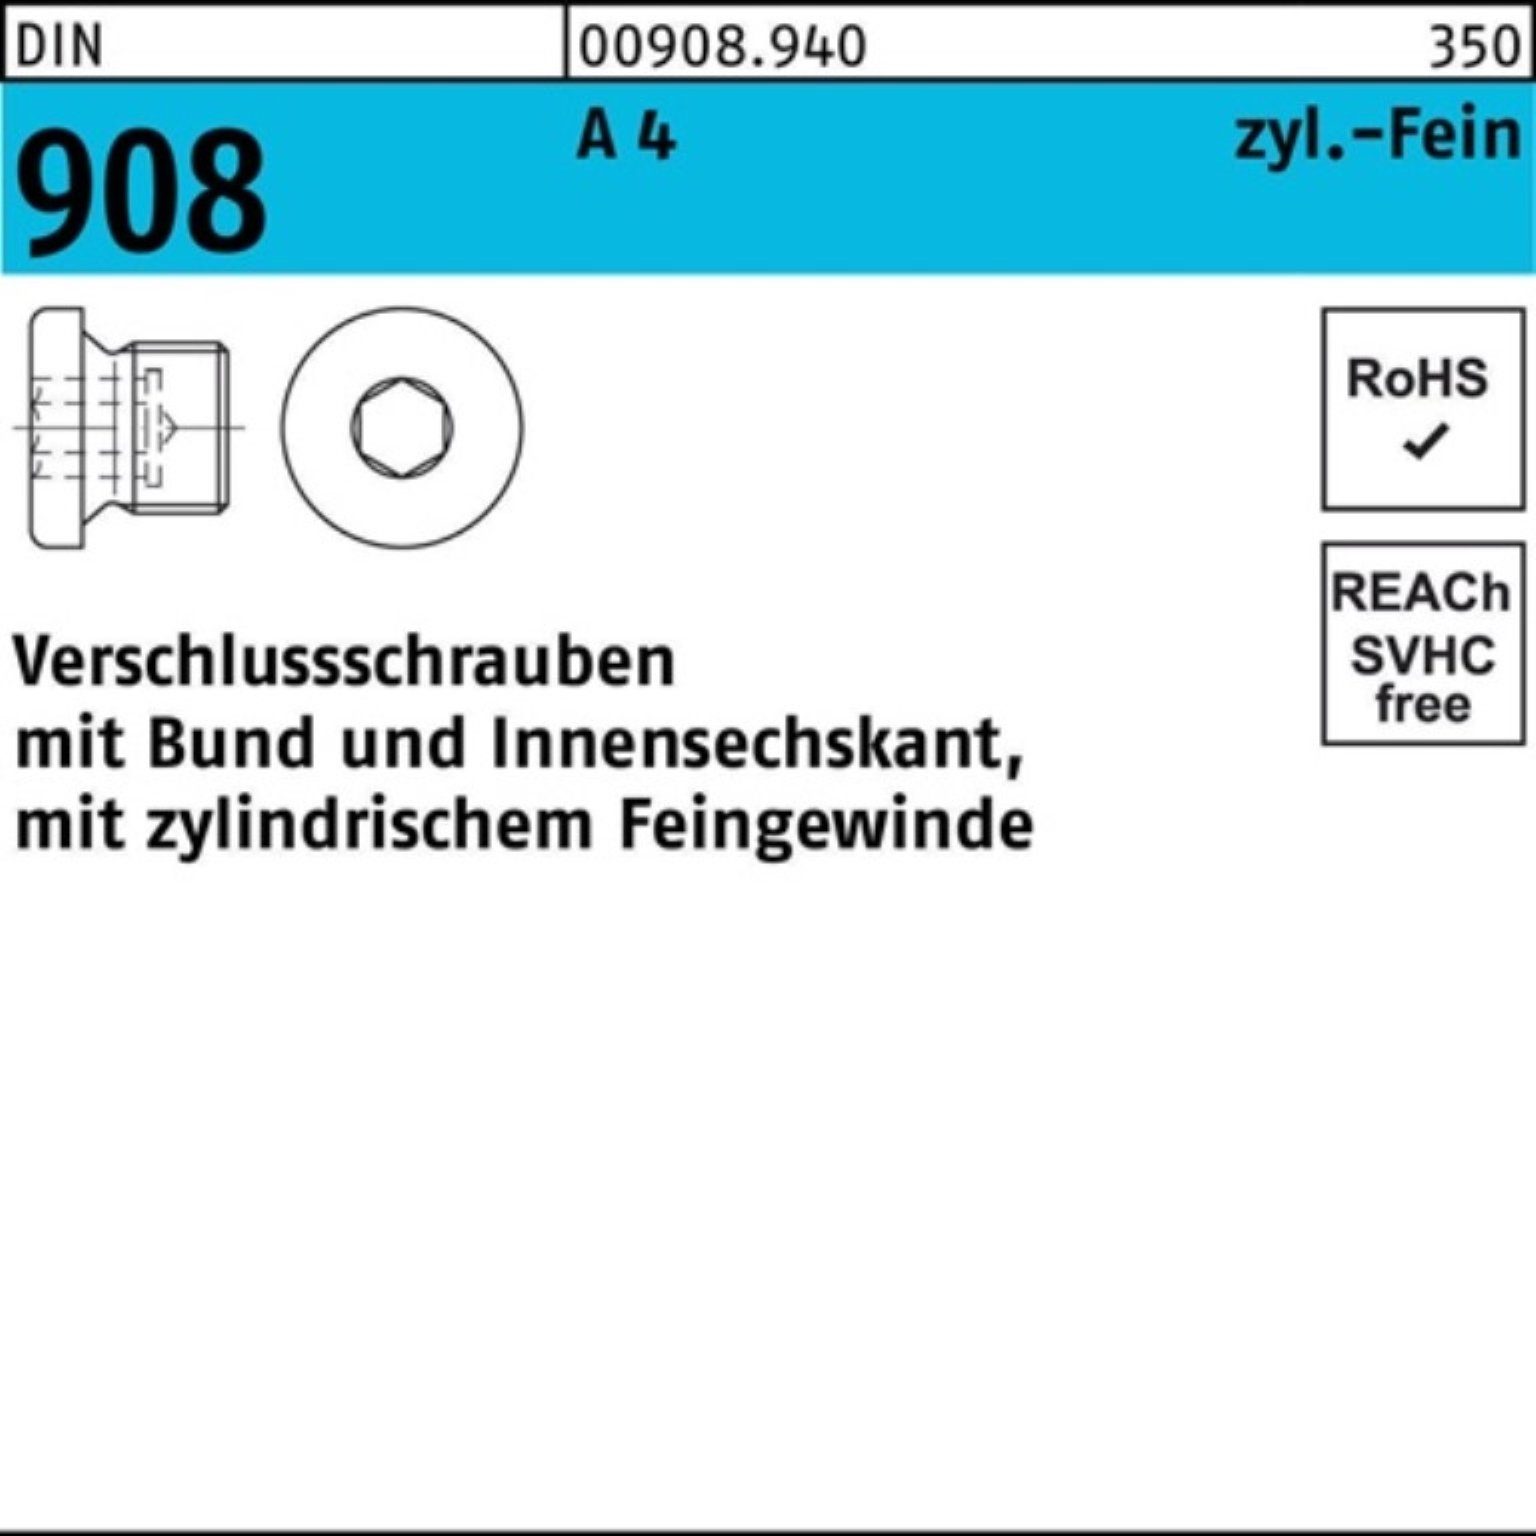 Reyher Schraube 100er Pack Verschlußschraube DIN 908 Bund/Innen-6kt M24x 1,5 A 4 50 S